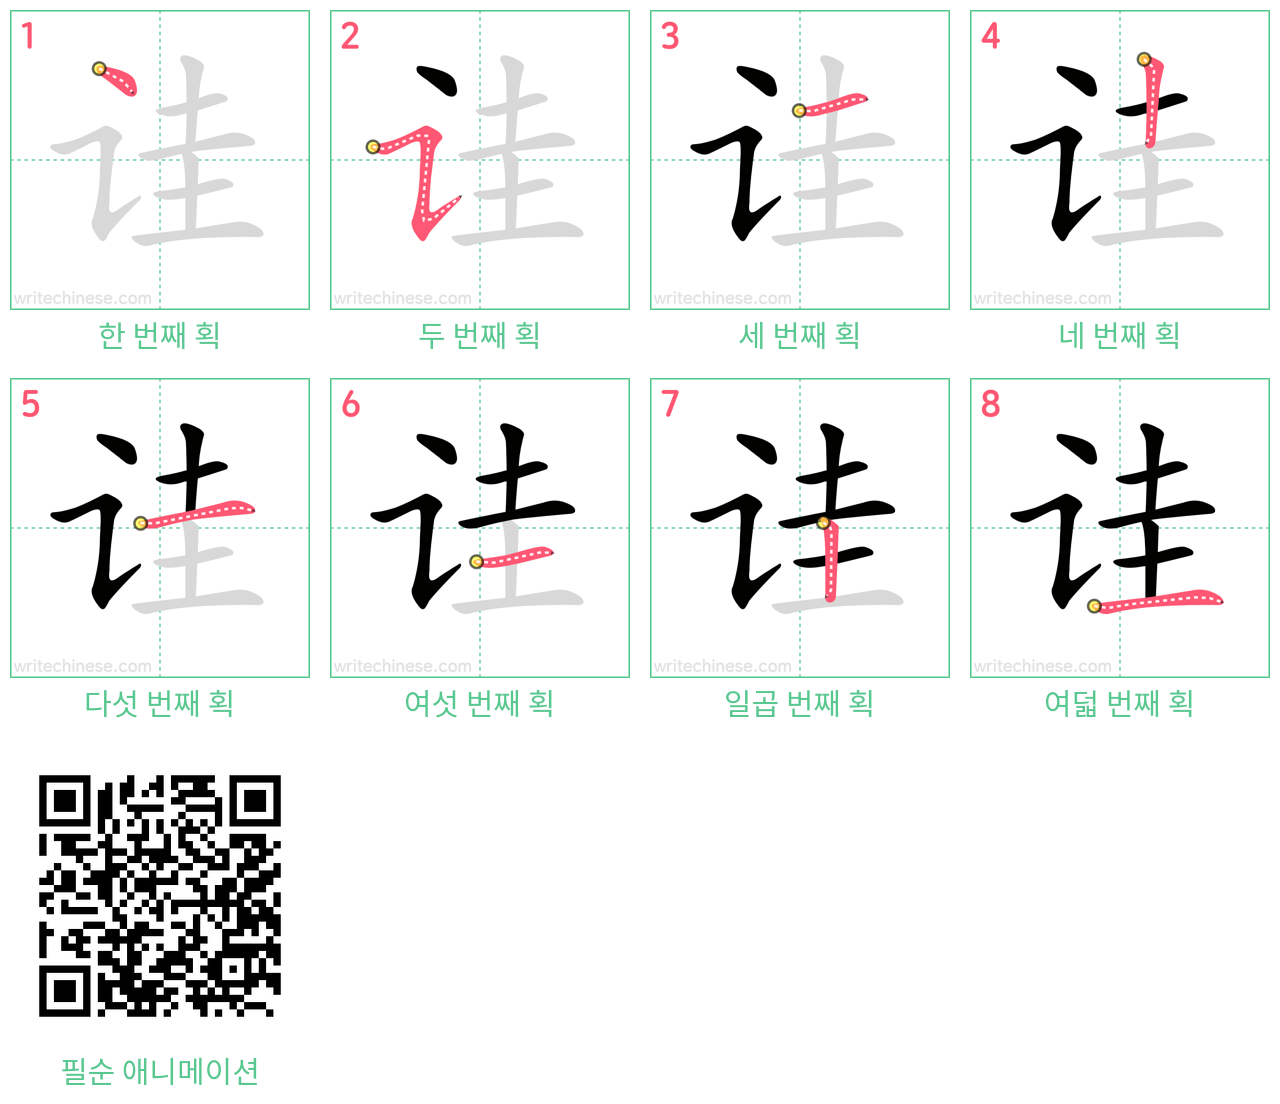 诖 step-by-step stroke order diagrams